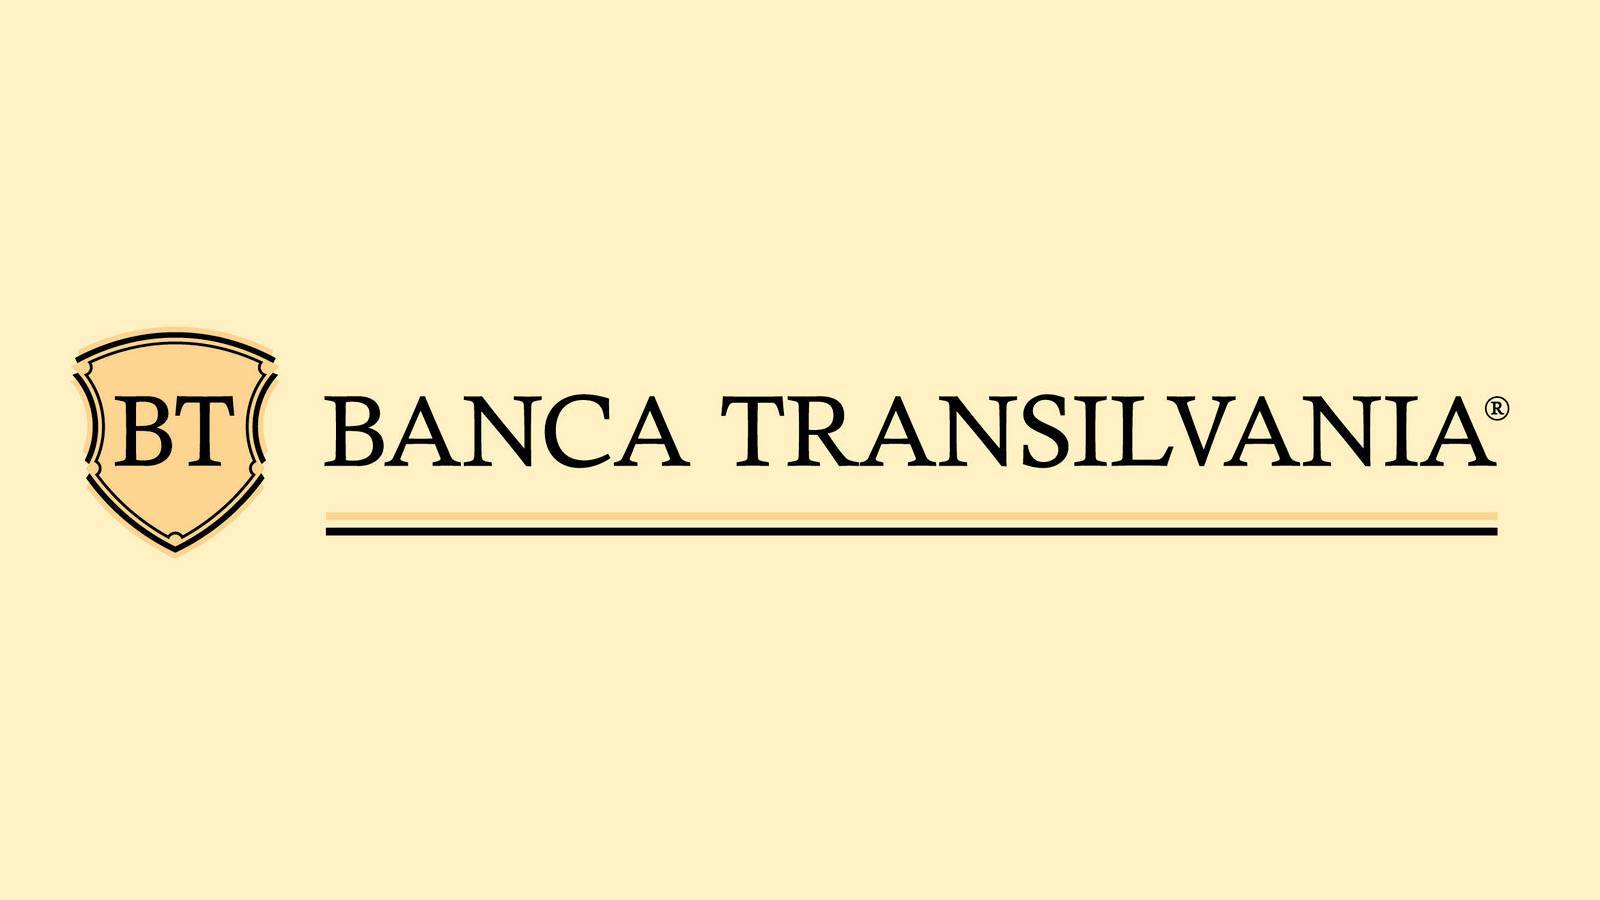 BANCA Transilvania-beslutet tillkännages OFFICIELLT Kunder måste veta